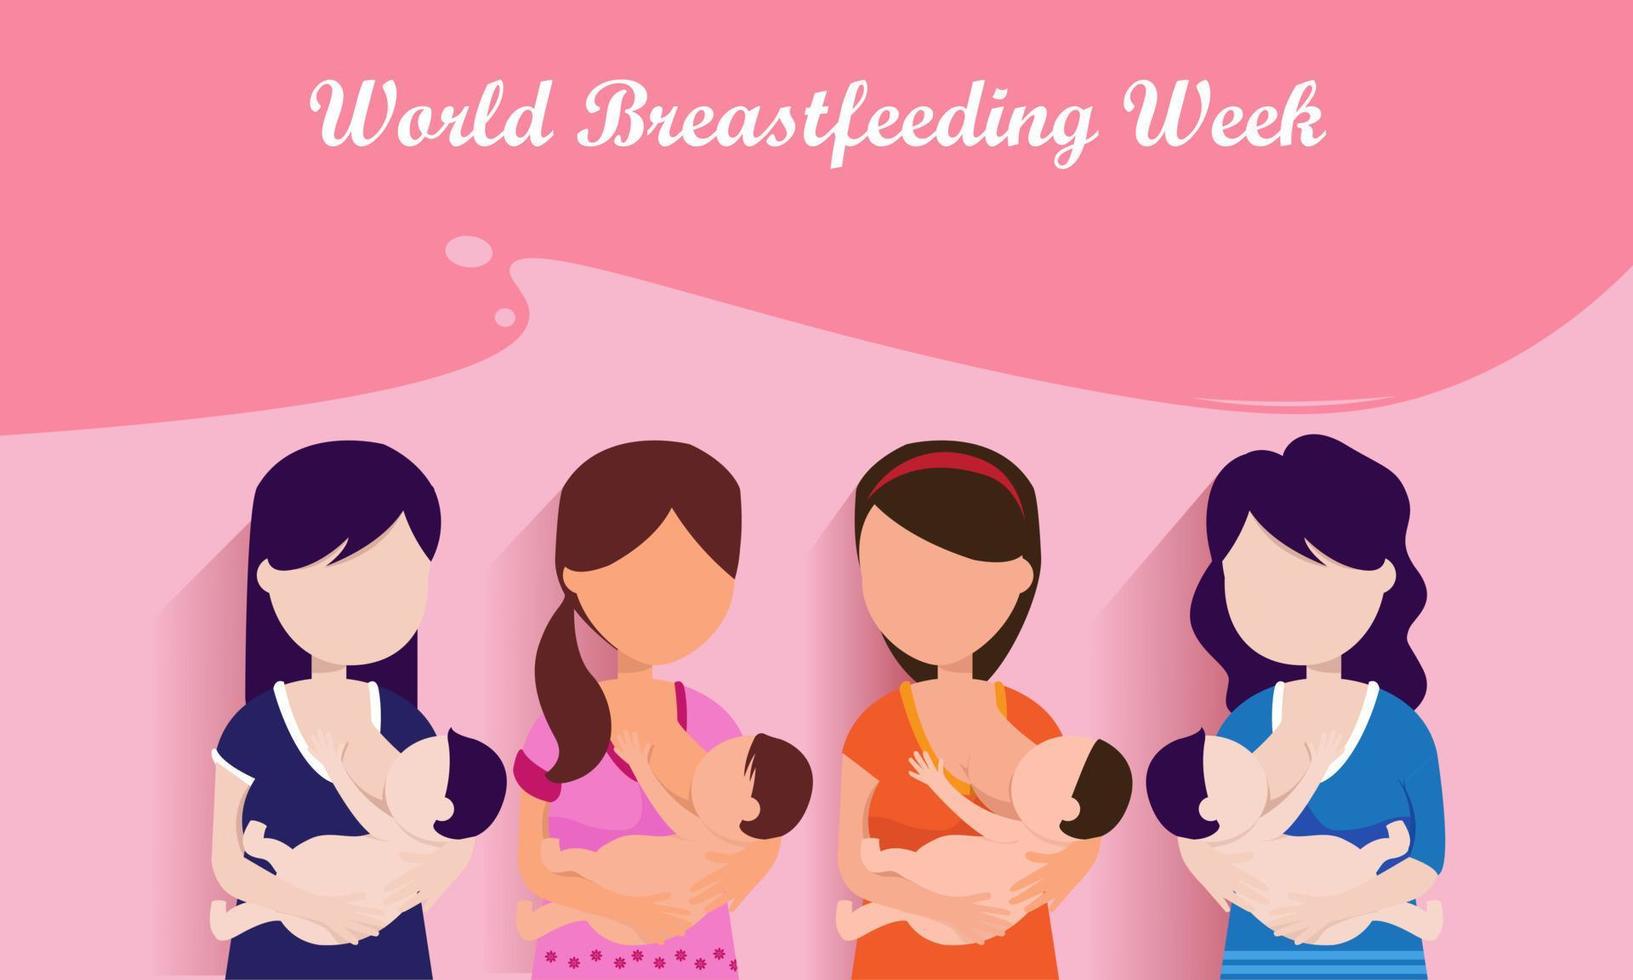 settimana mondiale dell'allattamento al seno, 1-7 agosto. banner, clip art per la festa della mamma. il bambino beve il latte dal seno femminile. vettore